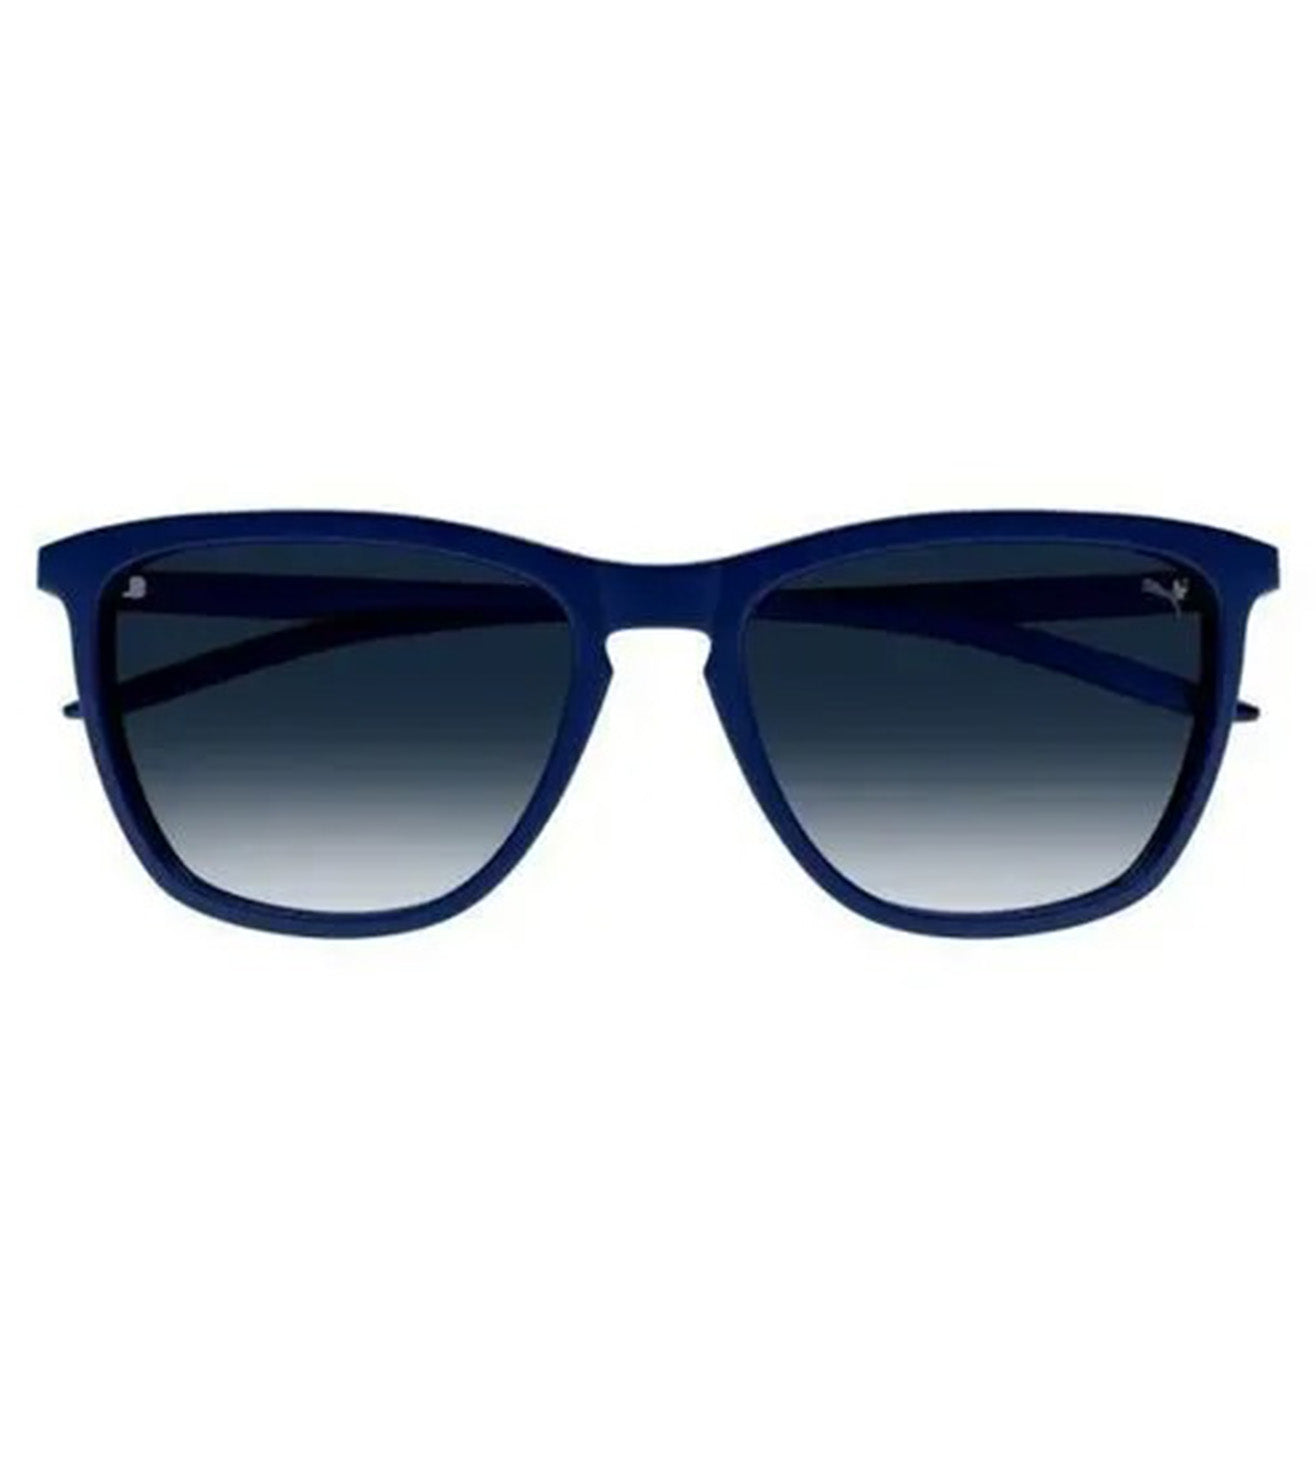 Puma Men's Blue Wayfarer Sunglasses